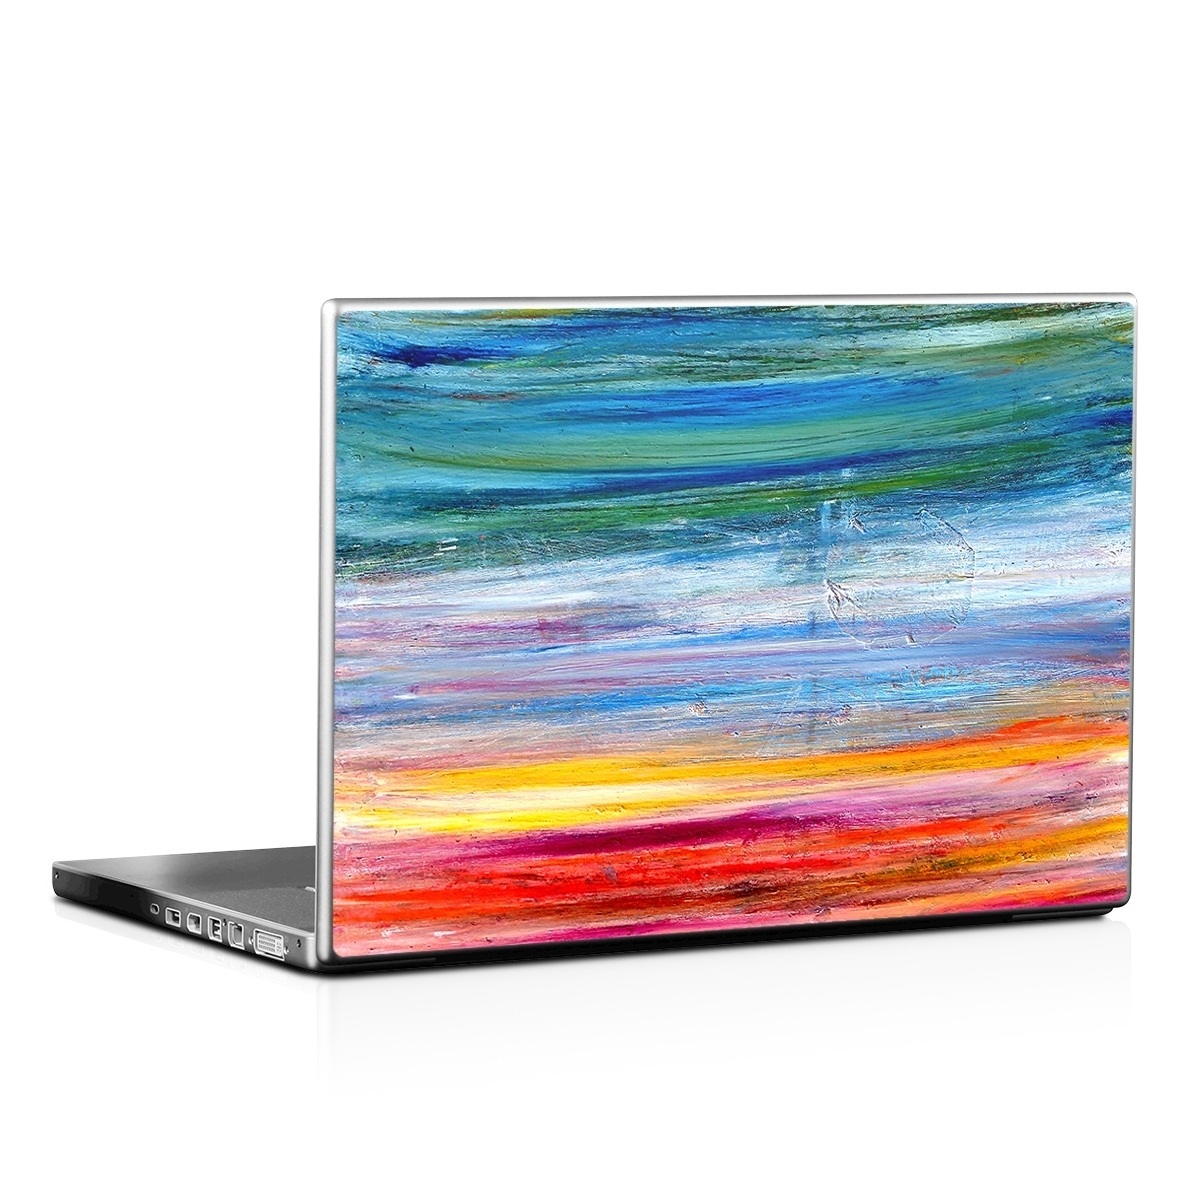 Laptop Skin - Waterfall (Image 1)